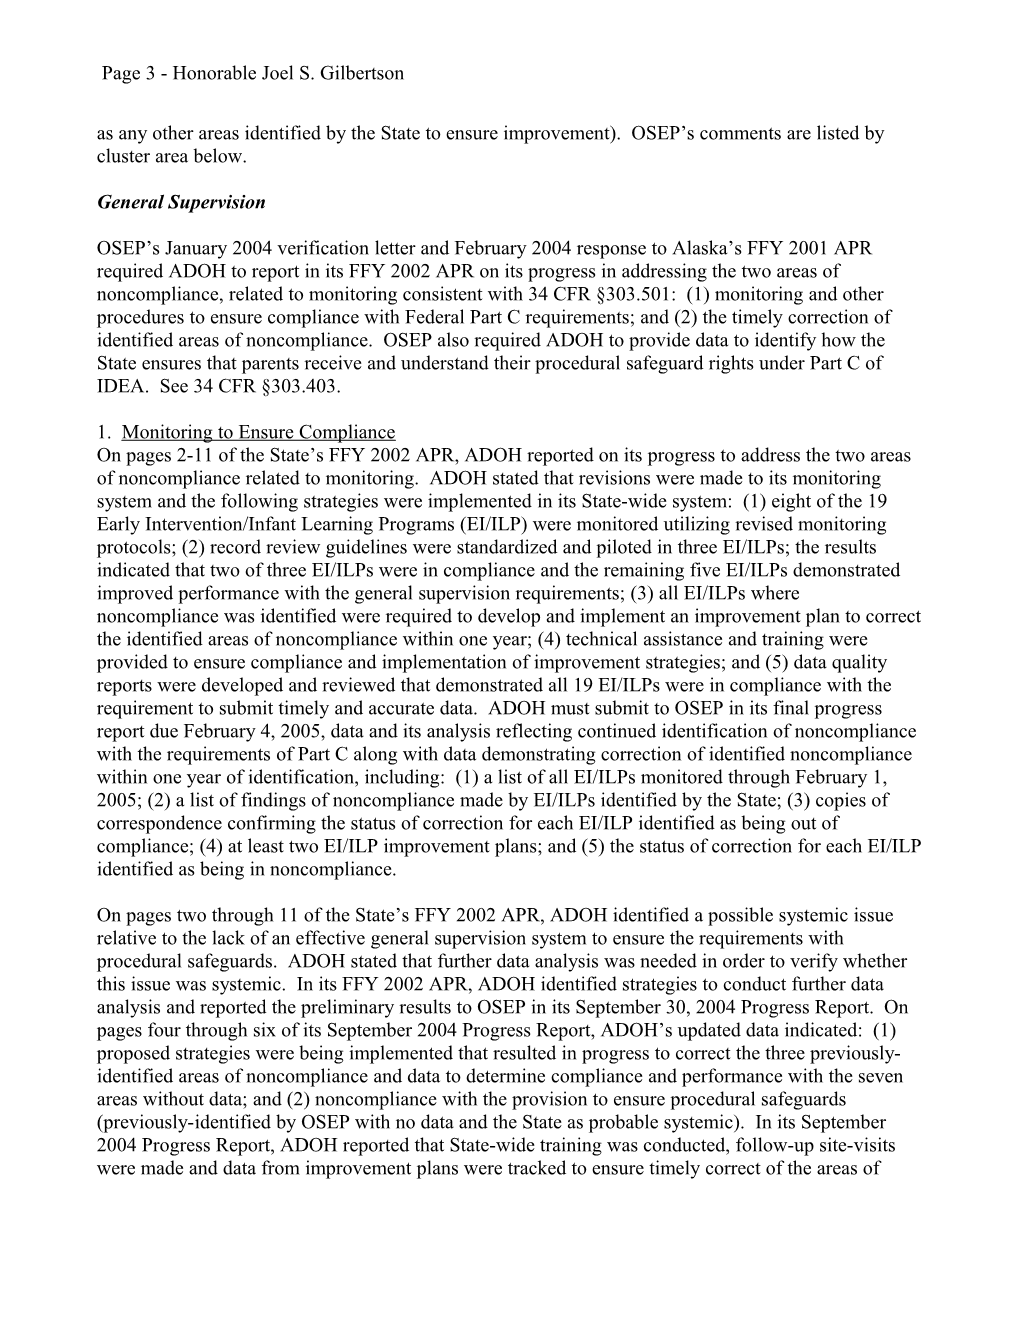 Alaska Part C APR Letter, 2002-2003 (MS Word)